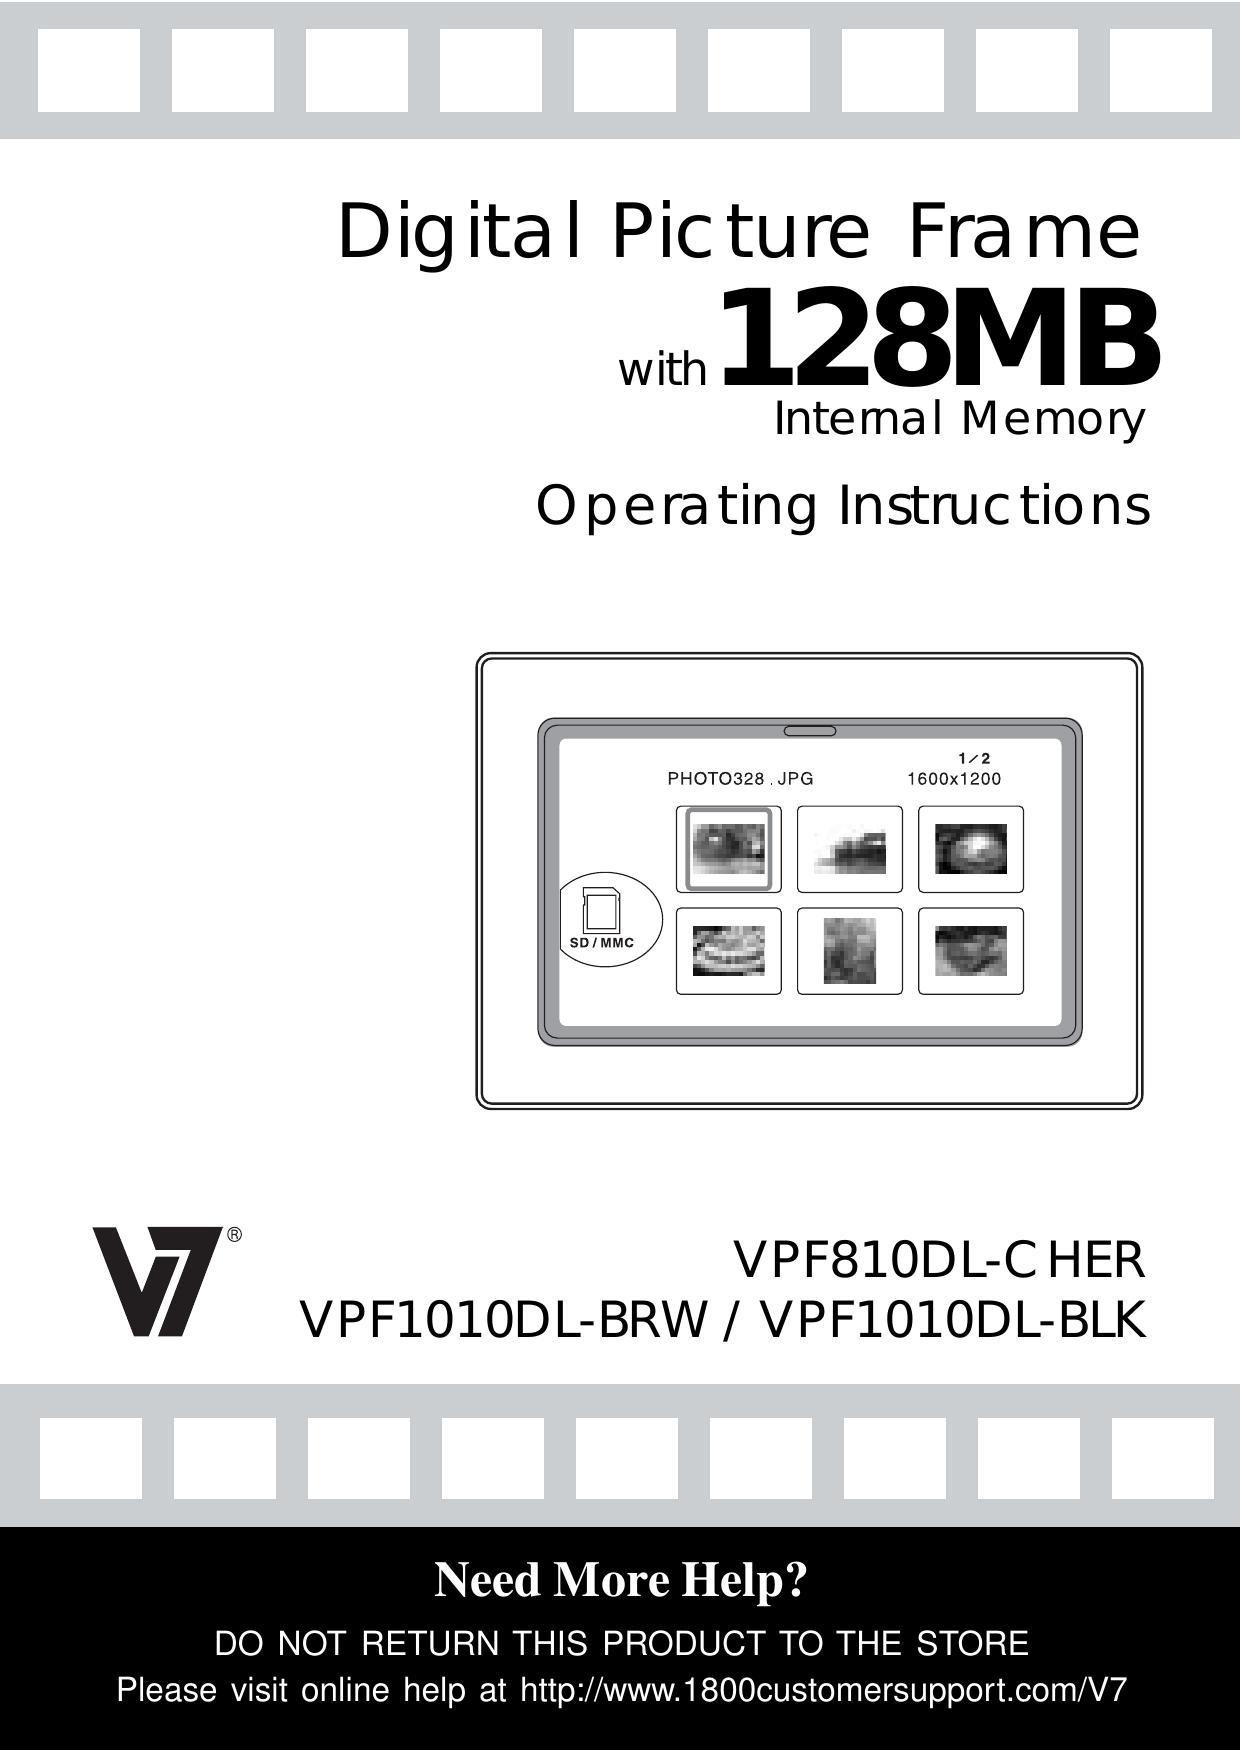 Venturer VPF1010DL-BLK Digital Photo Frame User Manual